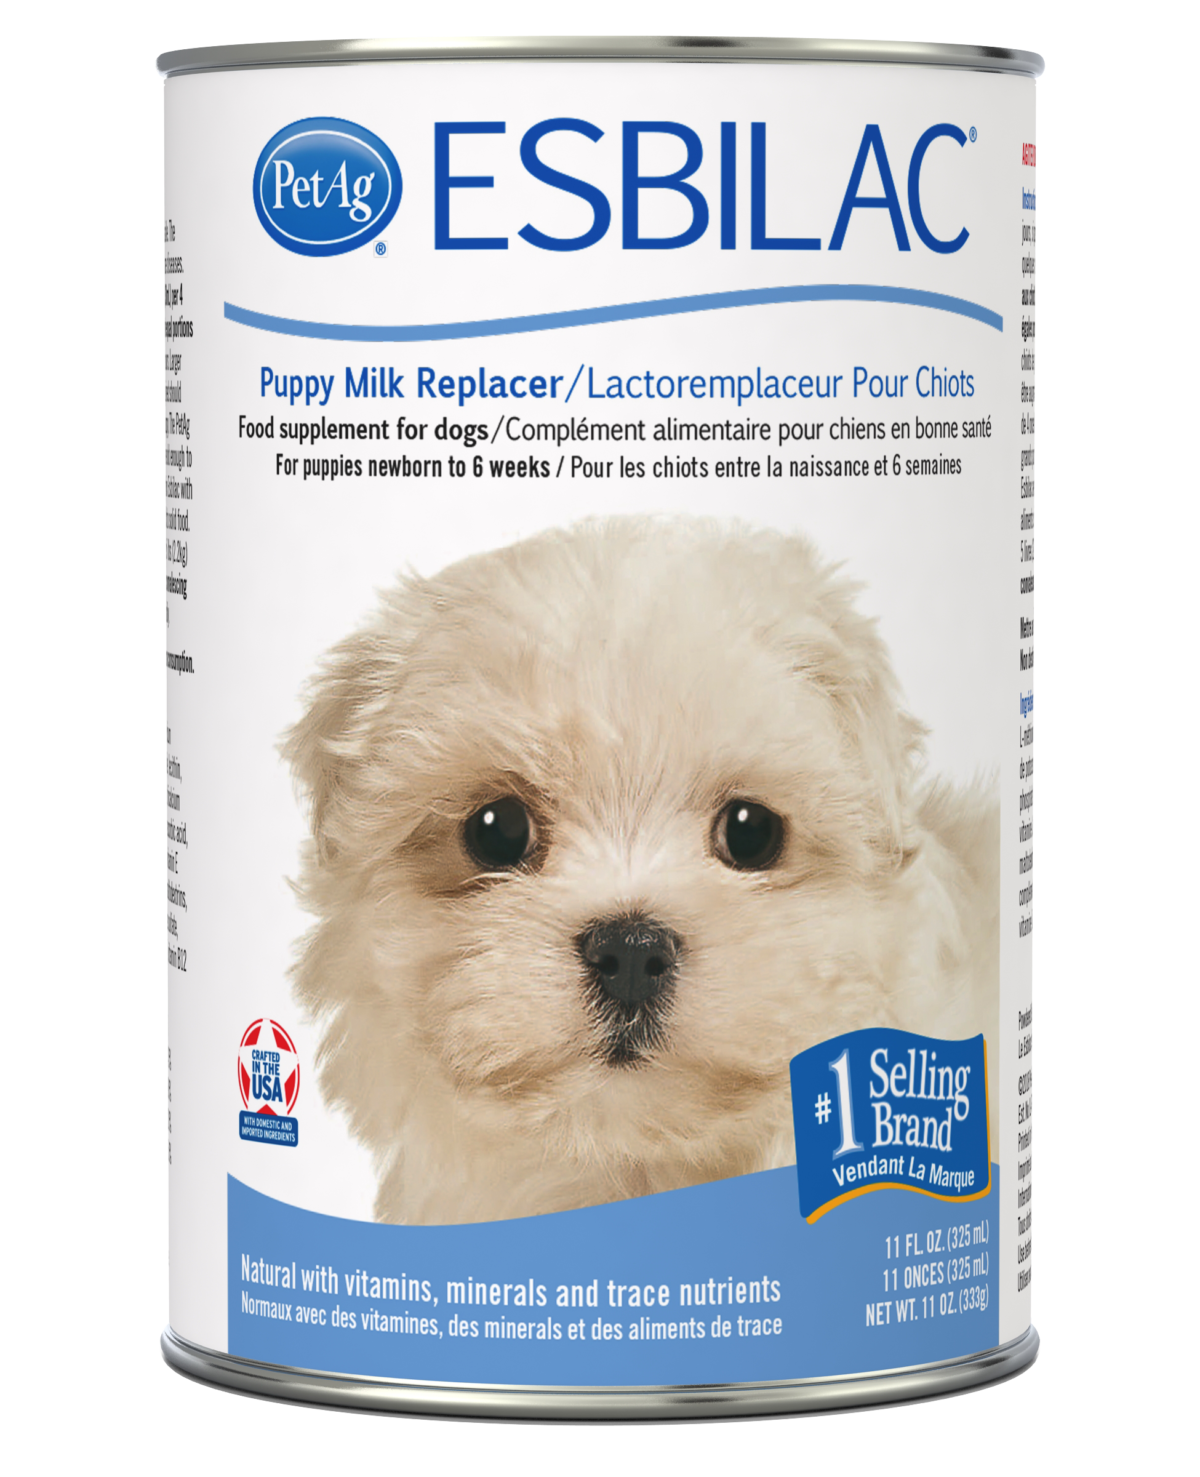 PetAg Esbilac® Puppy Milk Replacer Liquid